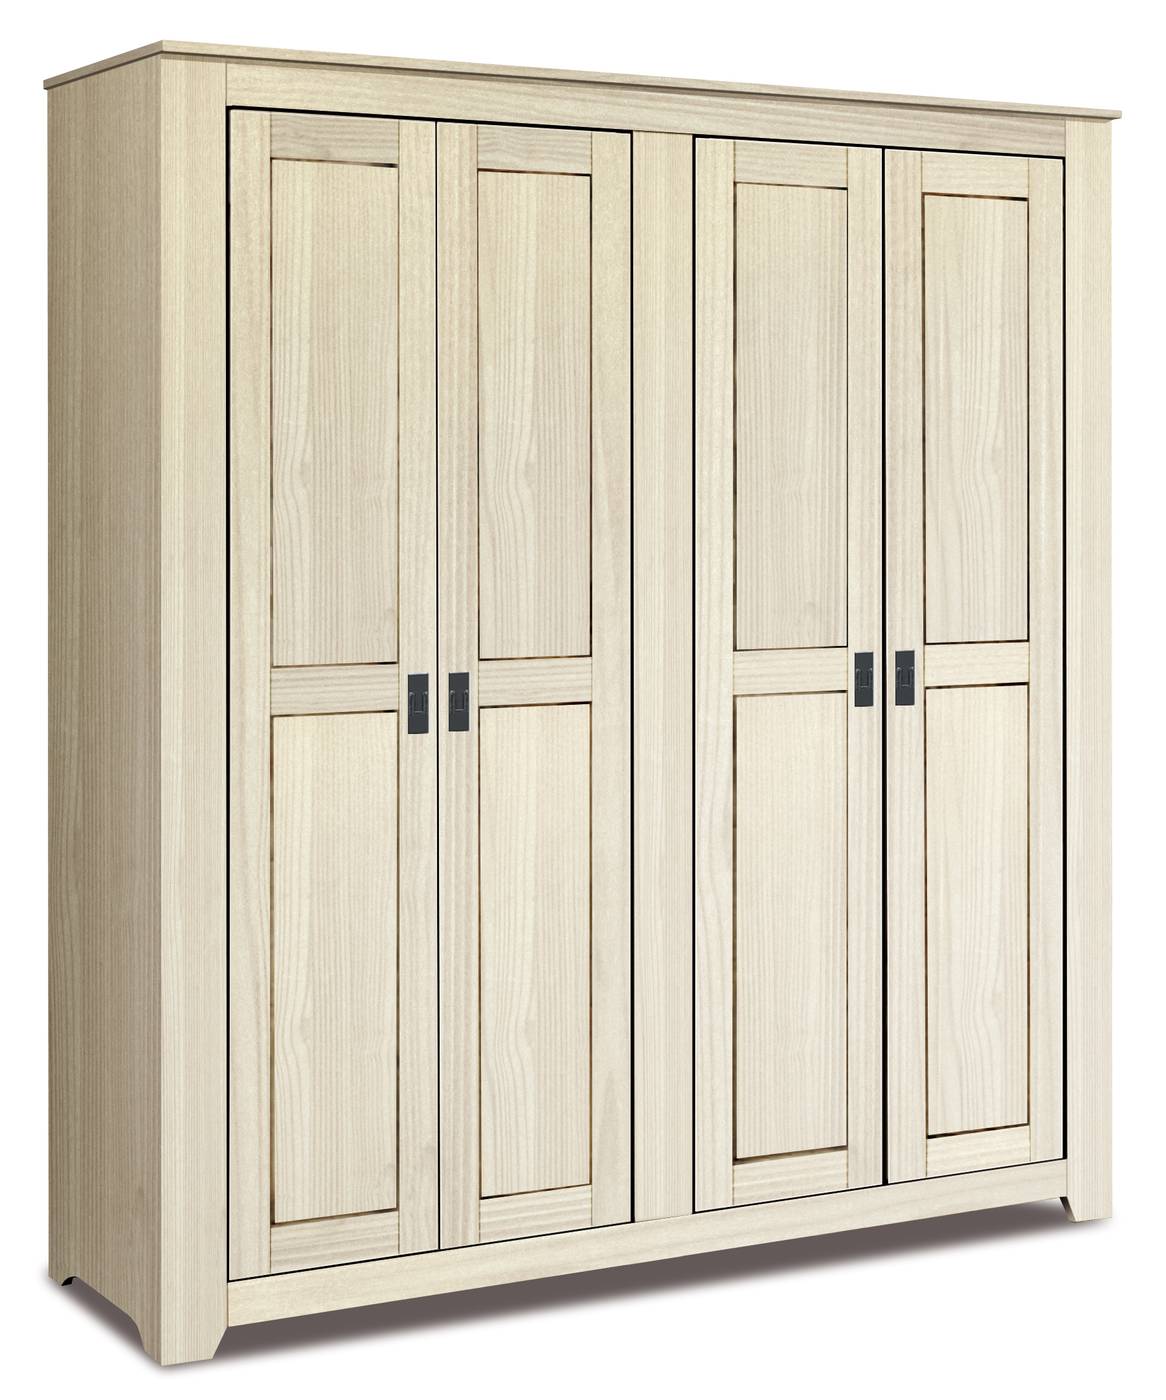 Armario de madera maciza de 4 puertas color blanco lavado